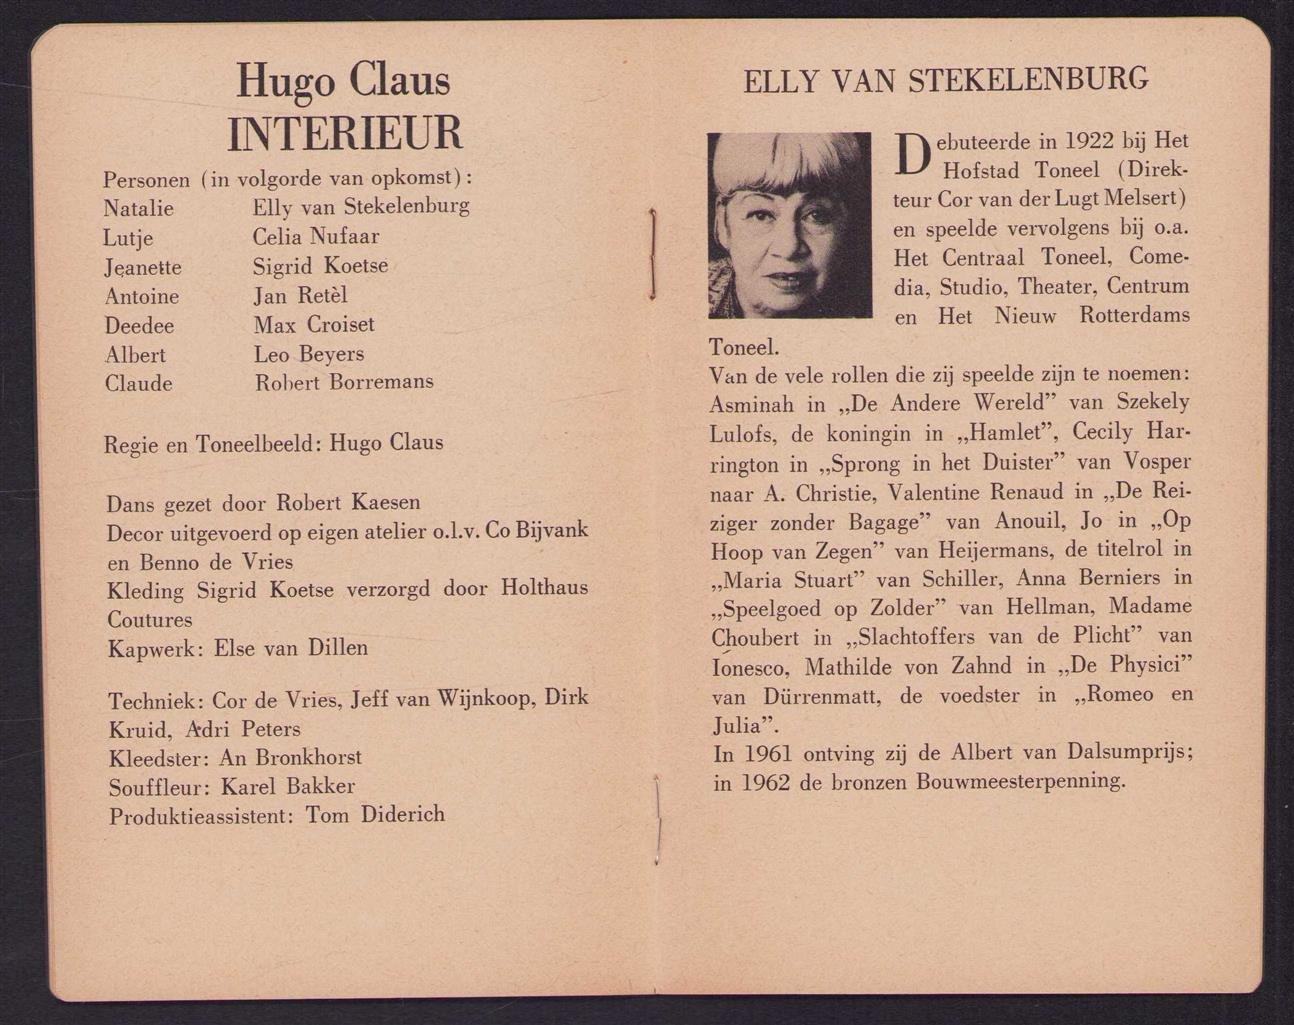 H. Claus - Interieur van Hugo Claus (programmaboekje?)